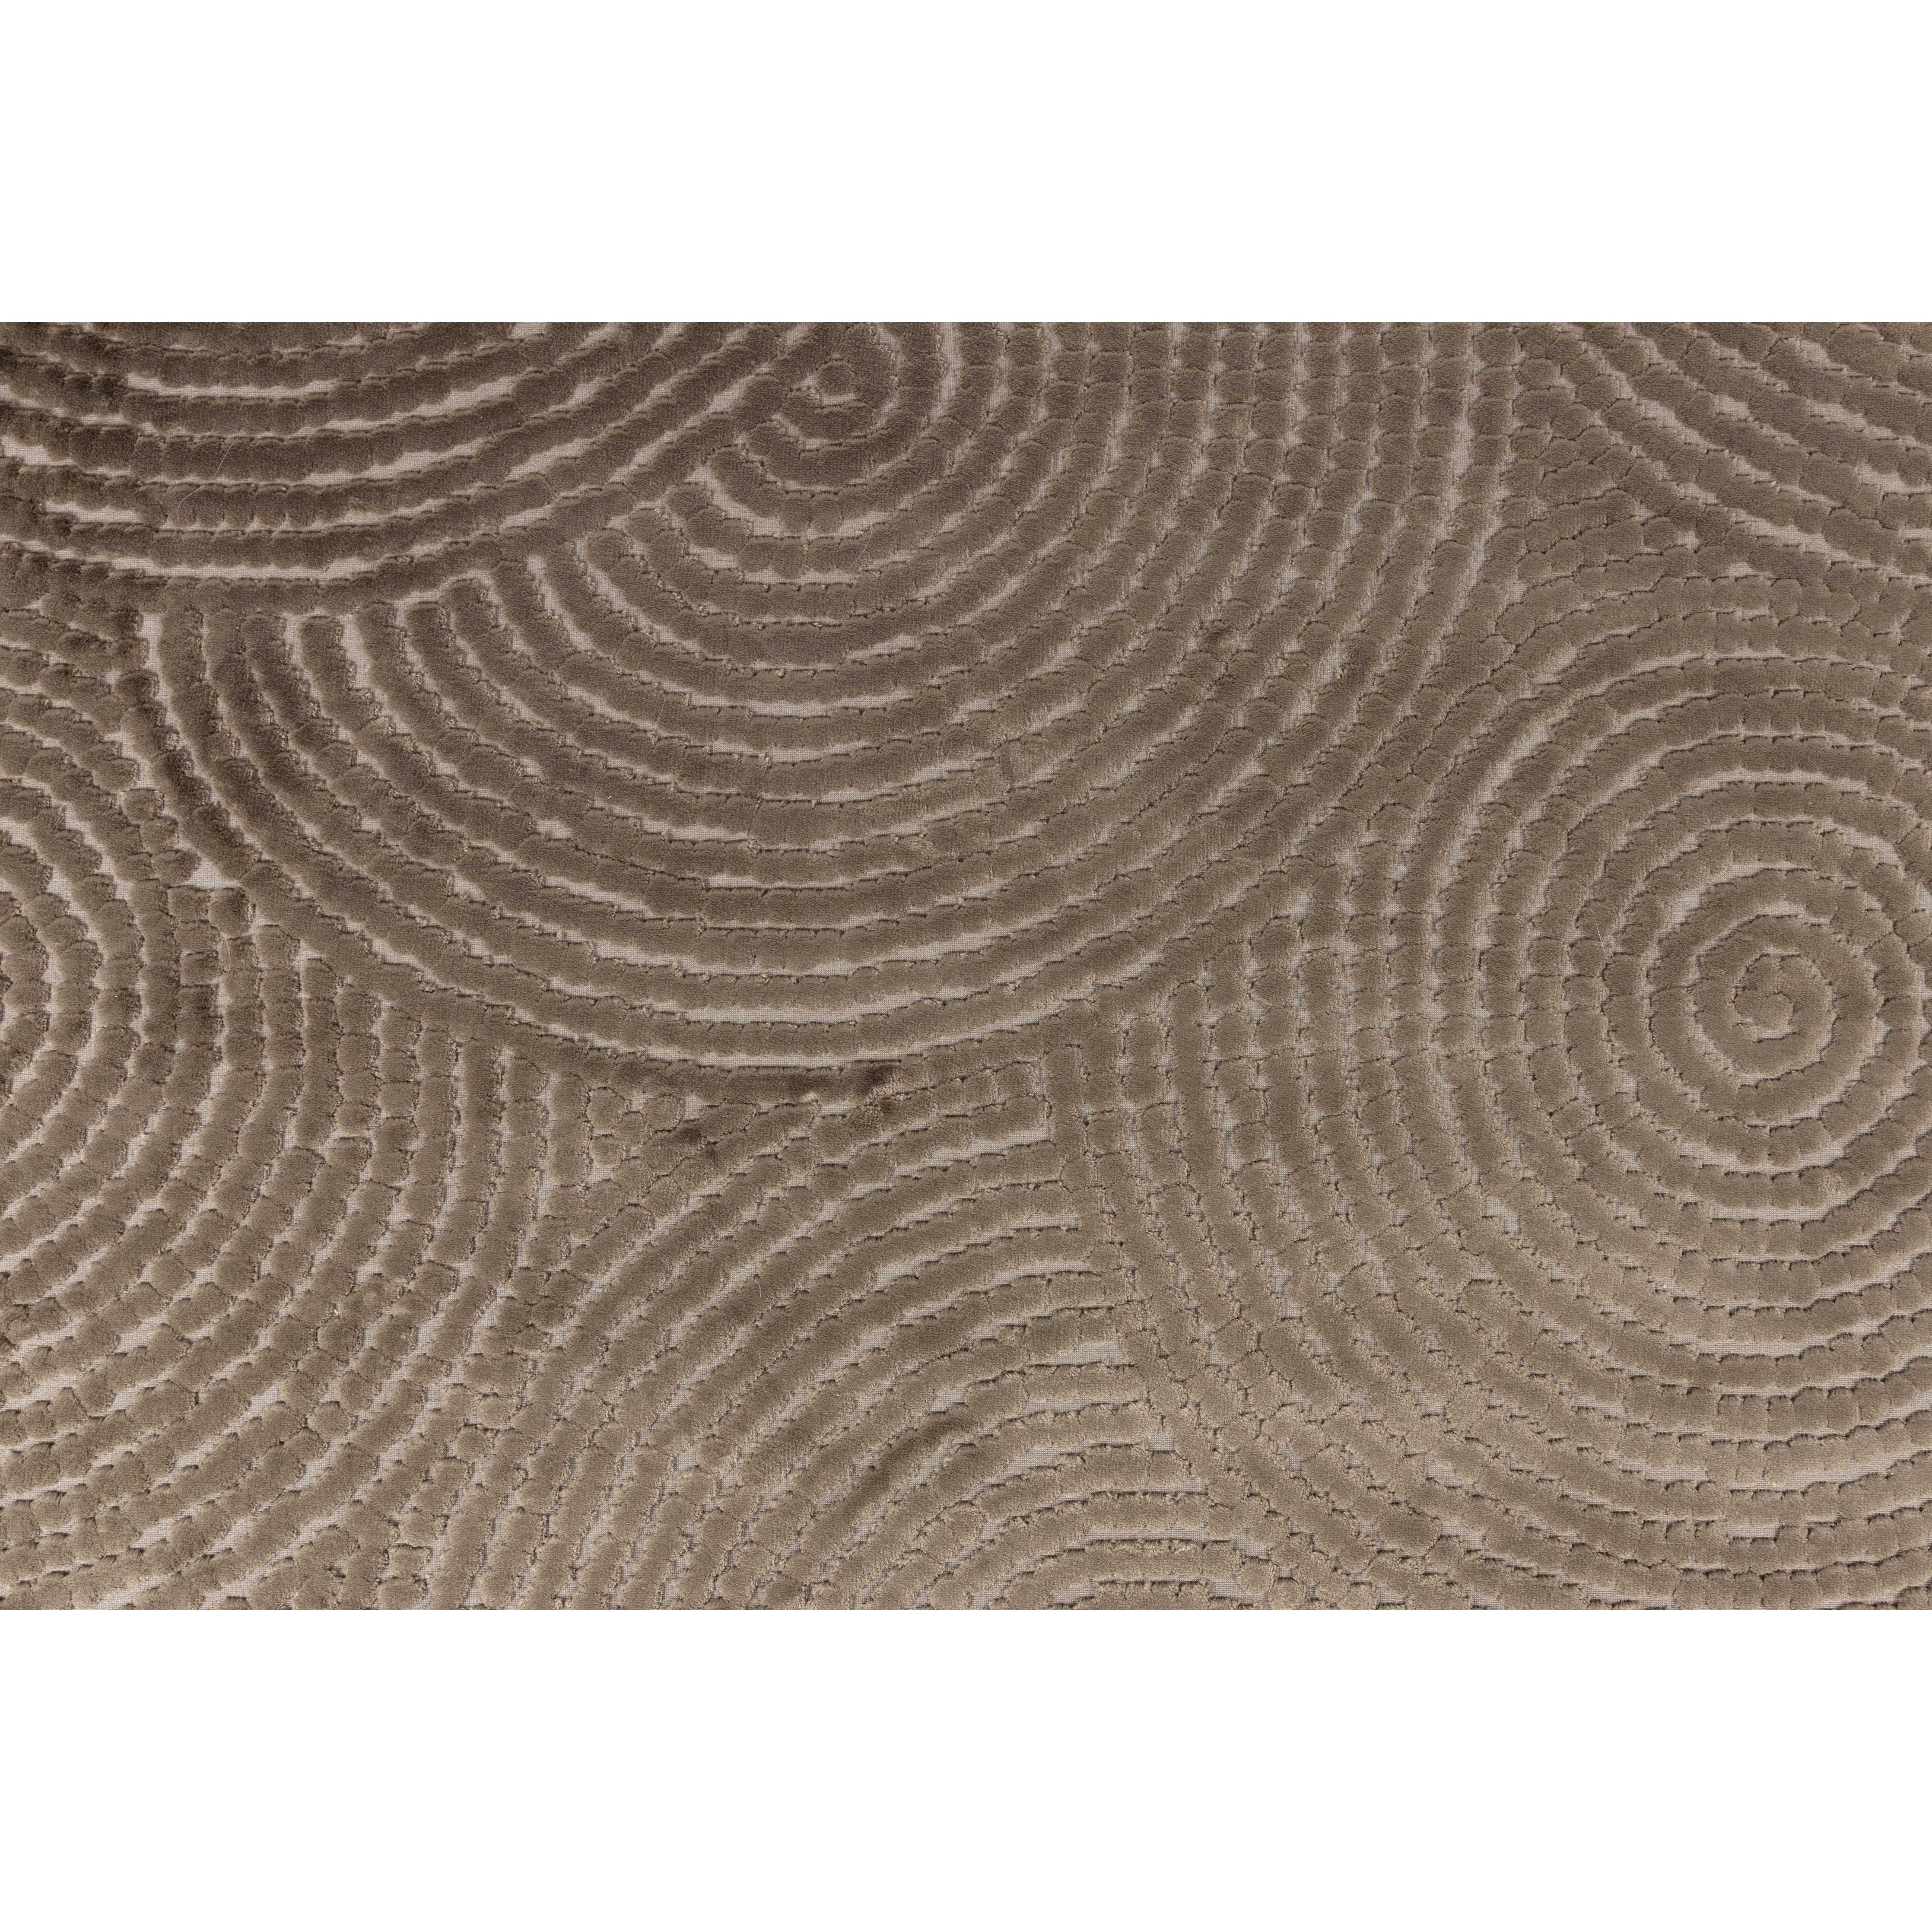 Carpet dots 200x300 caramel brown